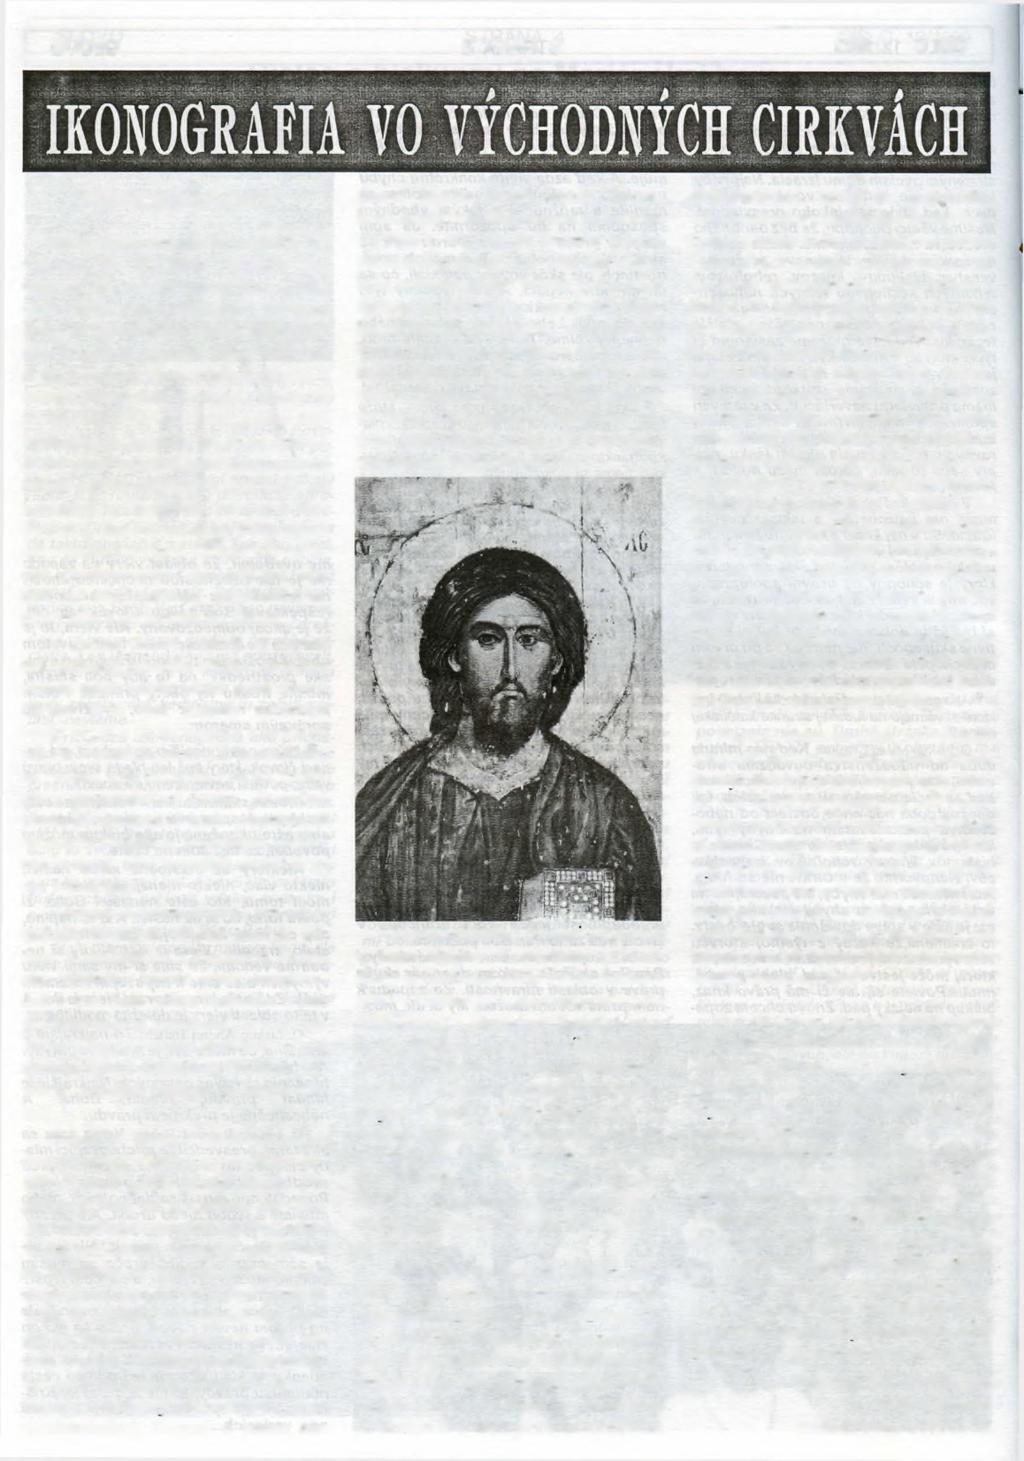 SLOVO STRANA 6 ČÍSLO 12/1993 Obsah ikonografie Od začiatku nebola ikonografia vo východných cirkvách umením pre umenie, ale umením pre cirkev.